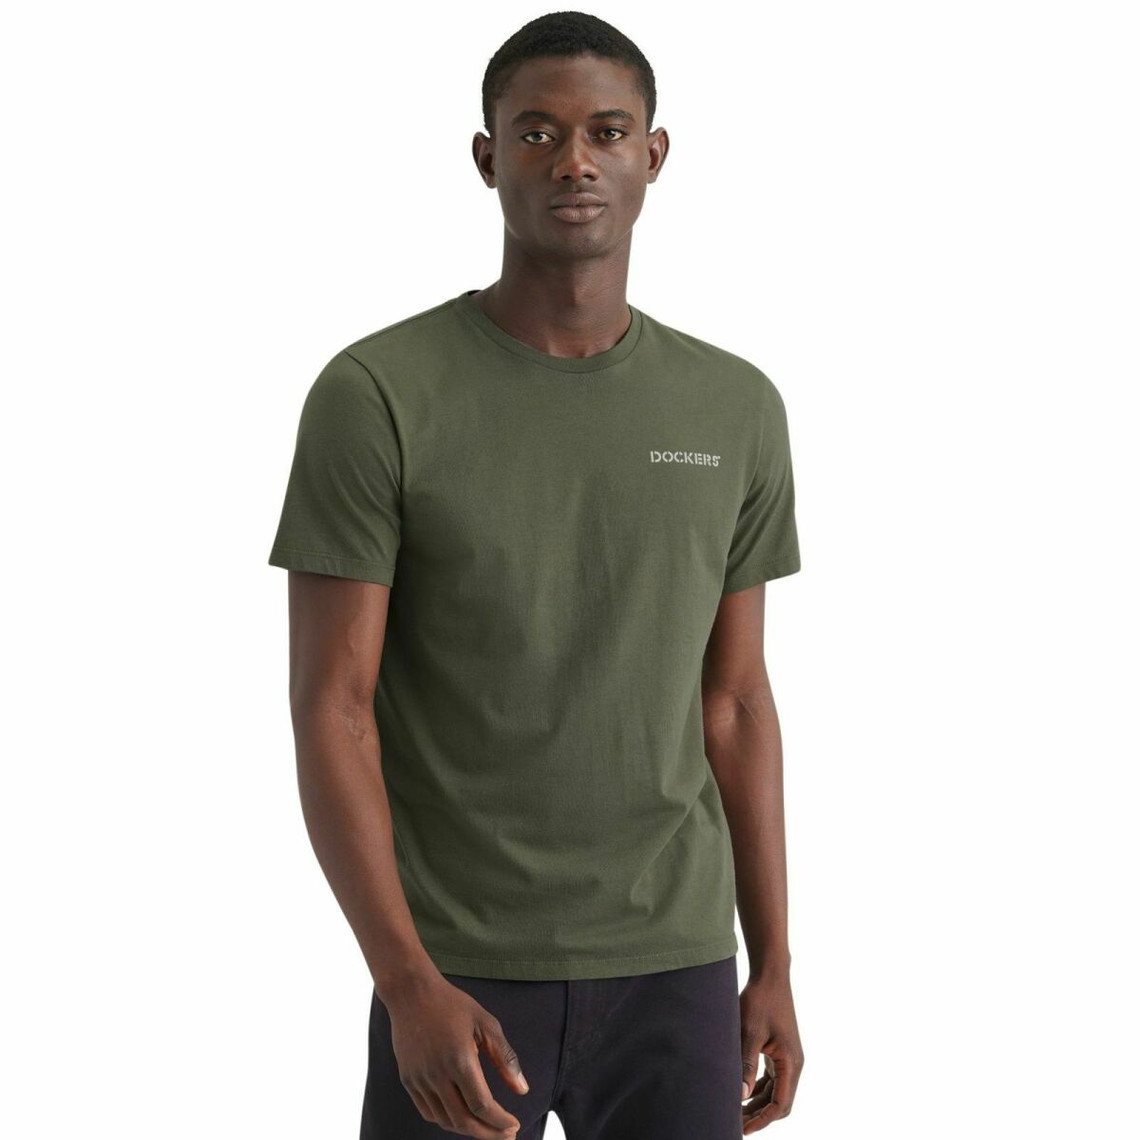 Tee-shirt manches courtes en coton vert olive